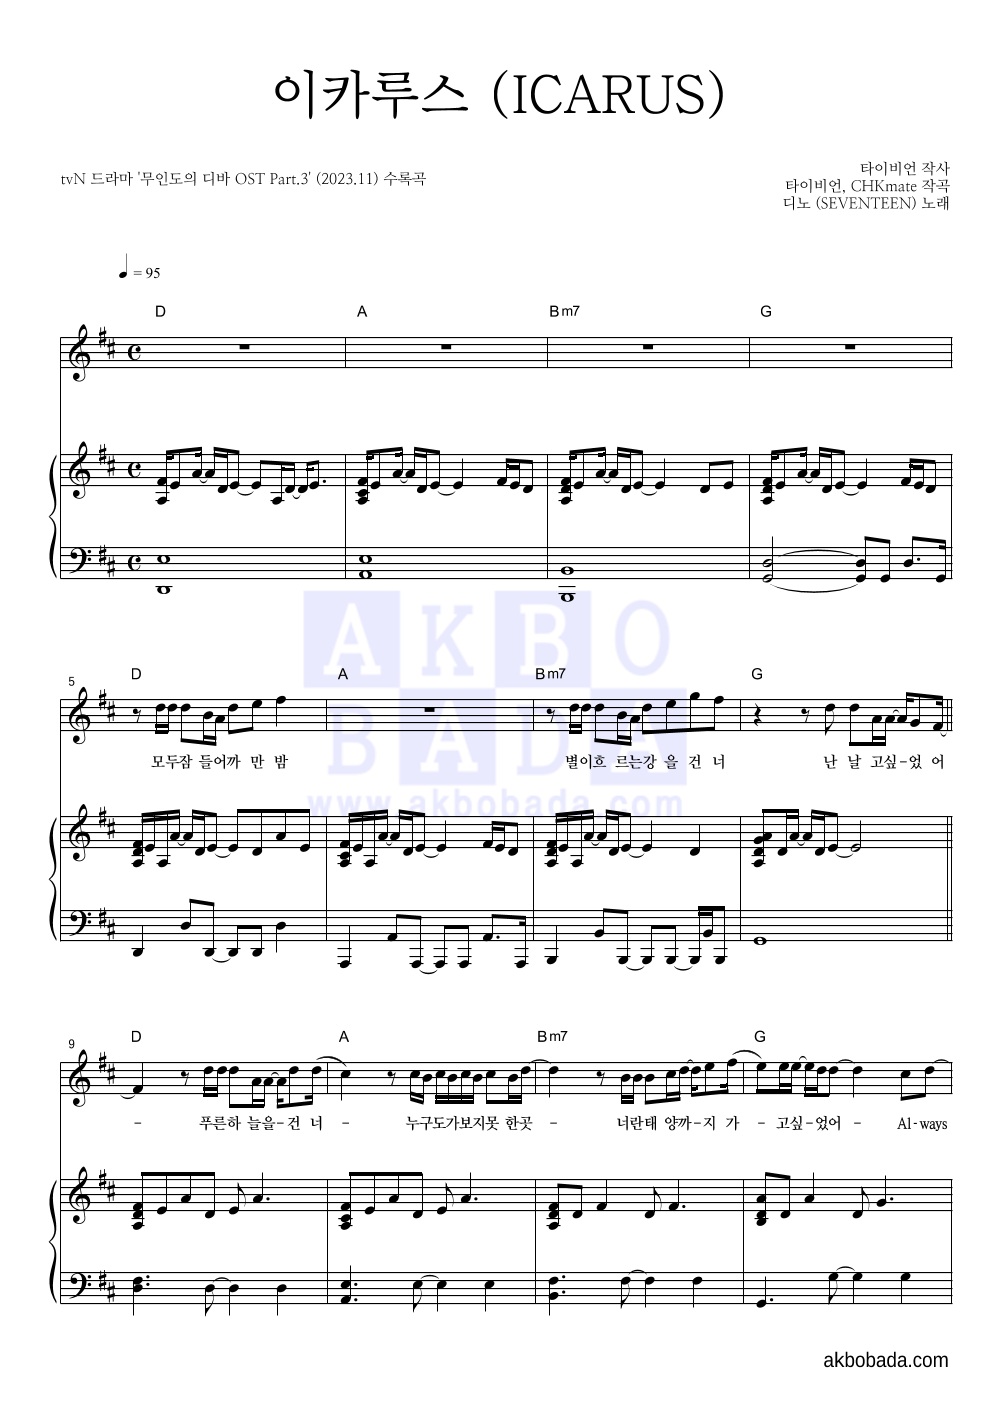 디노 - 이카루스 (ICARUS) 피아노 3단 악보 